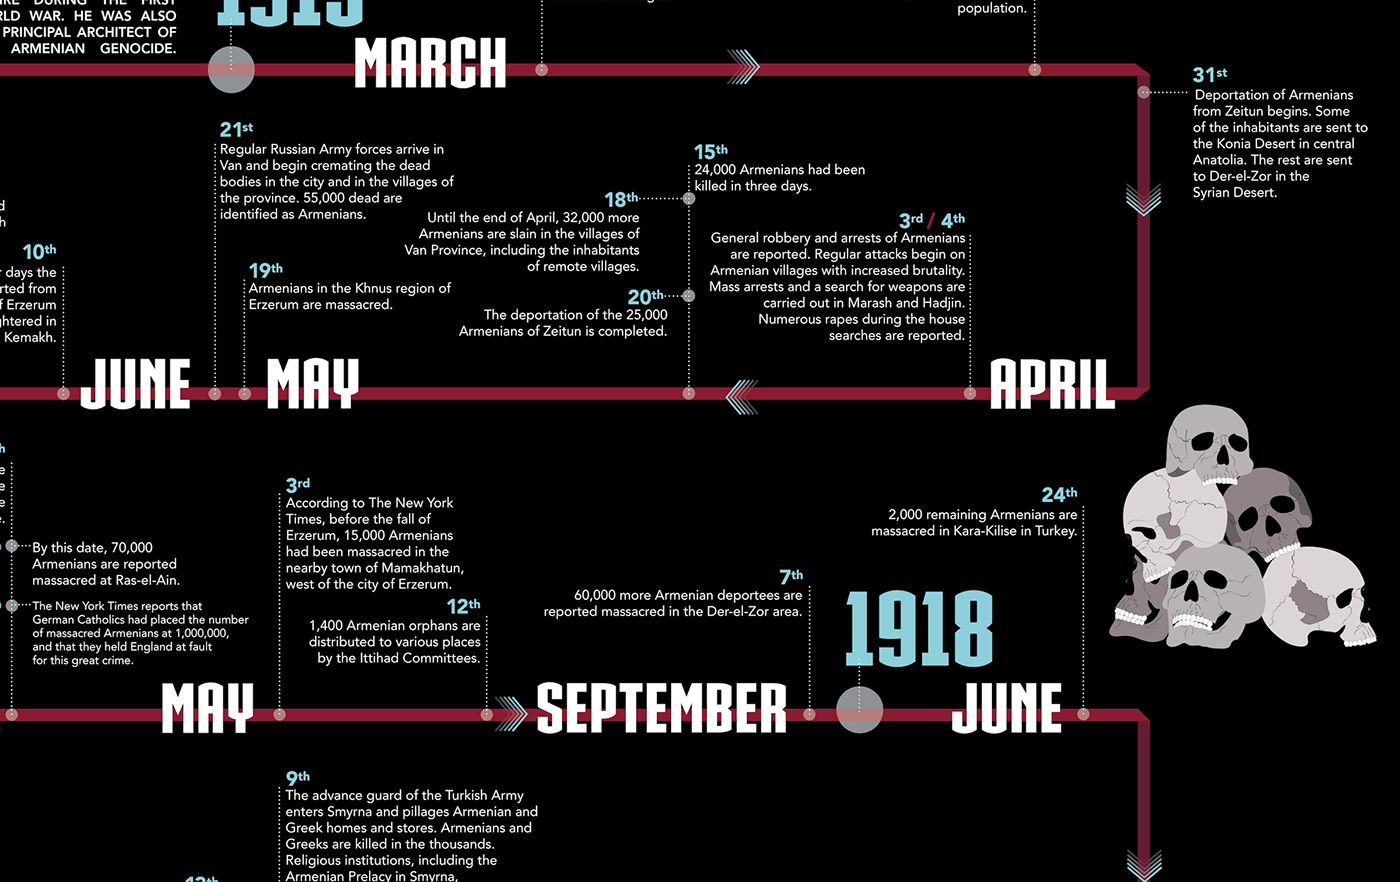 Armenian genocide timeline timeline design infographic skulls genocide Armenian